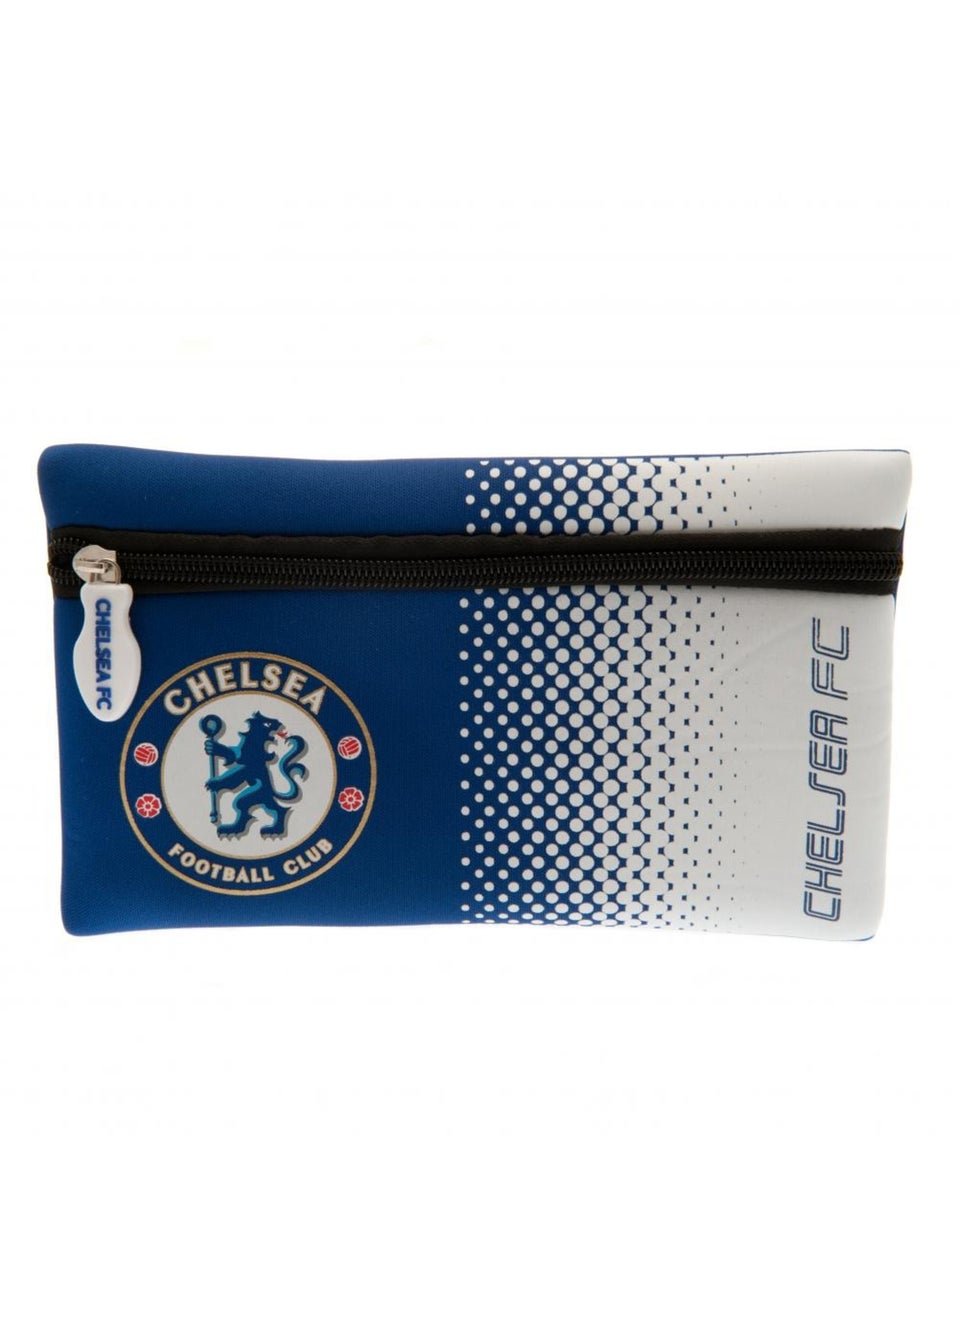 Chelsea FC Blue Pencil Case